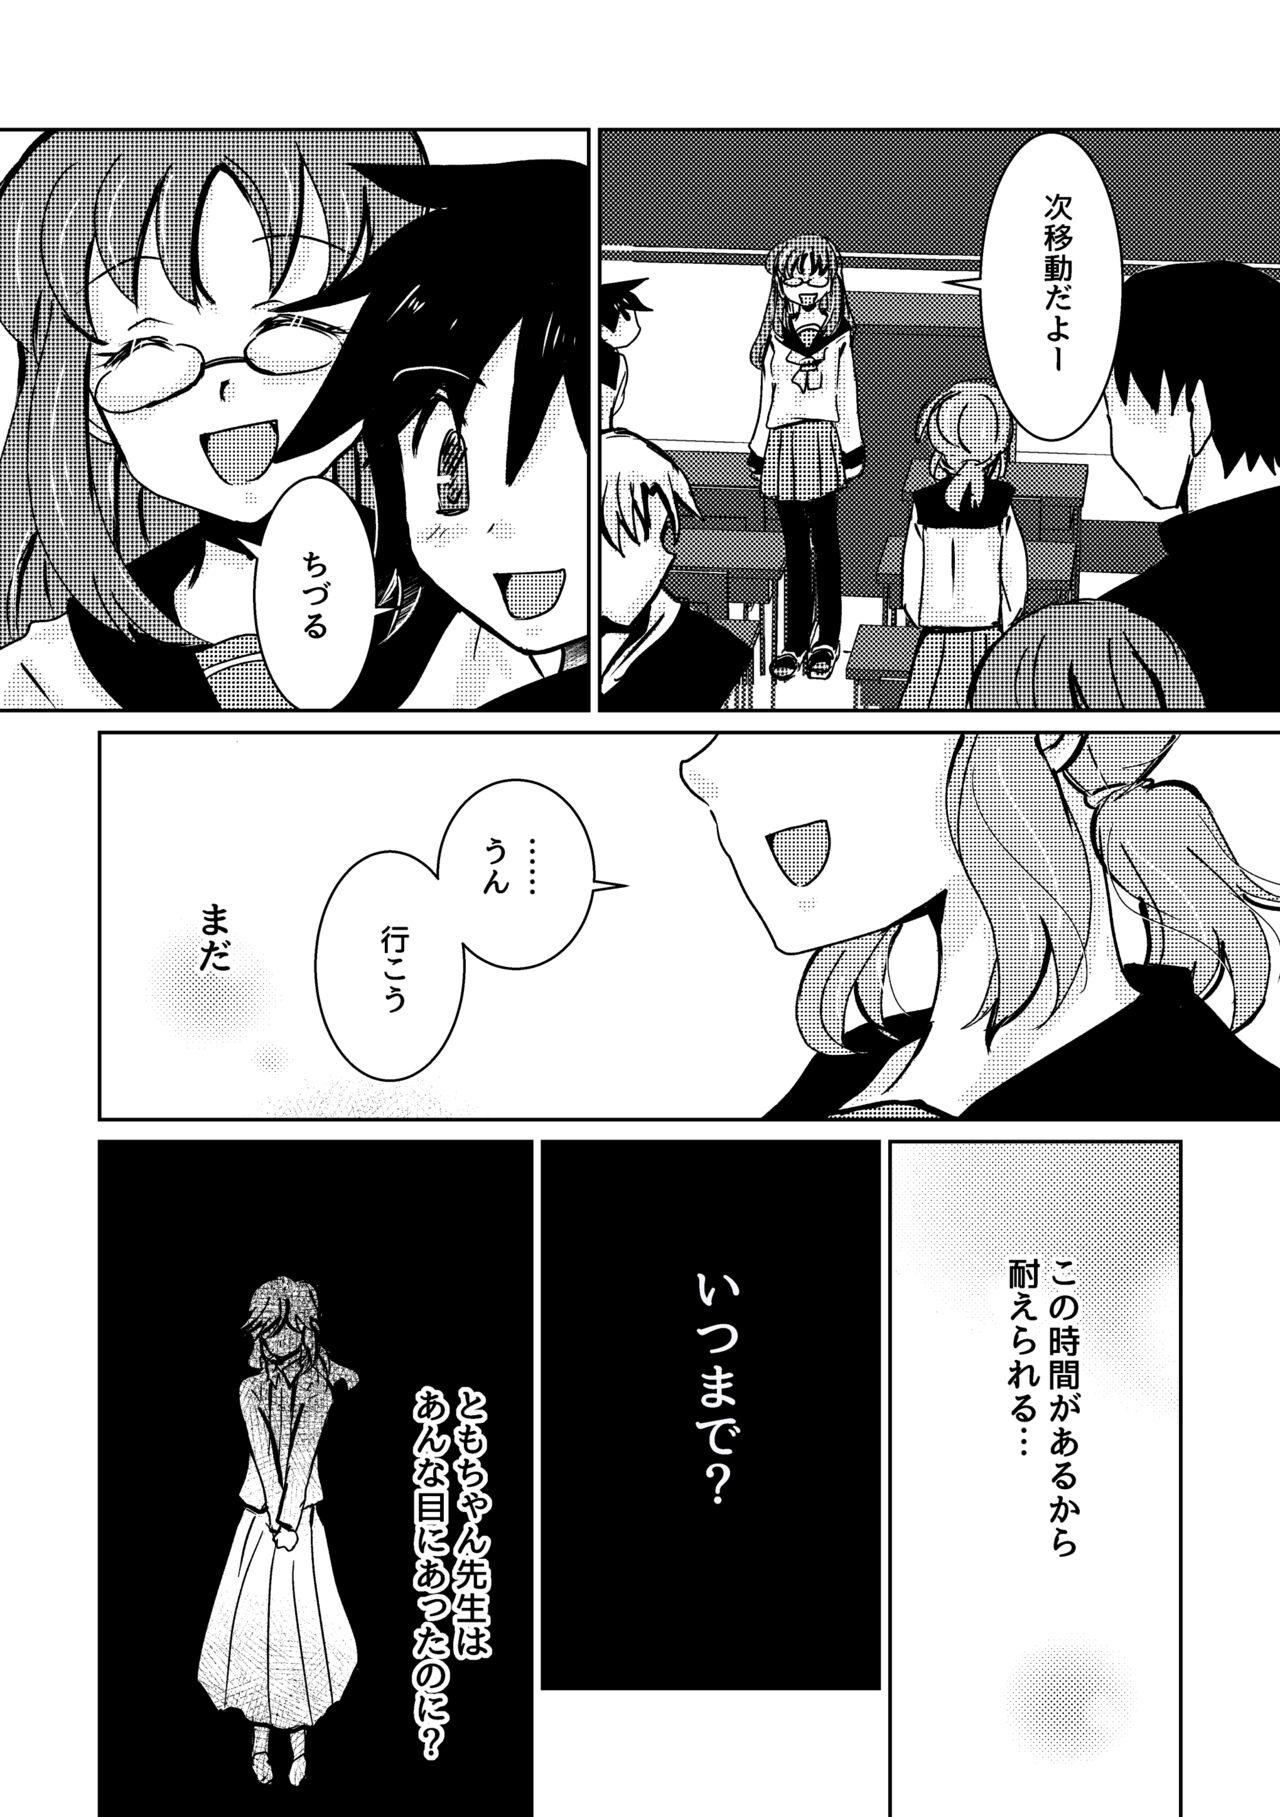 Hardcore Fuck Kareya Yoru no Hanaka Episode 3 Cdmx - Page 8